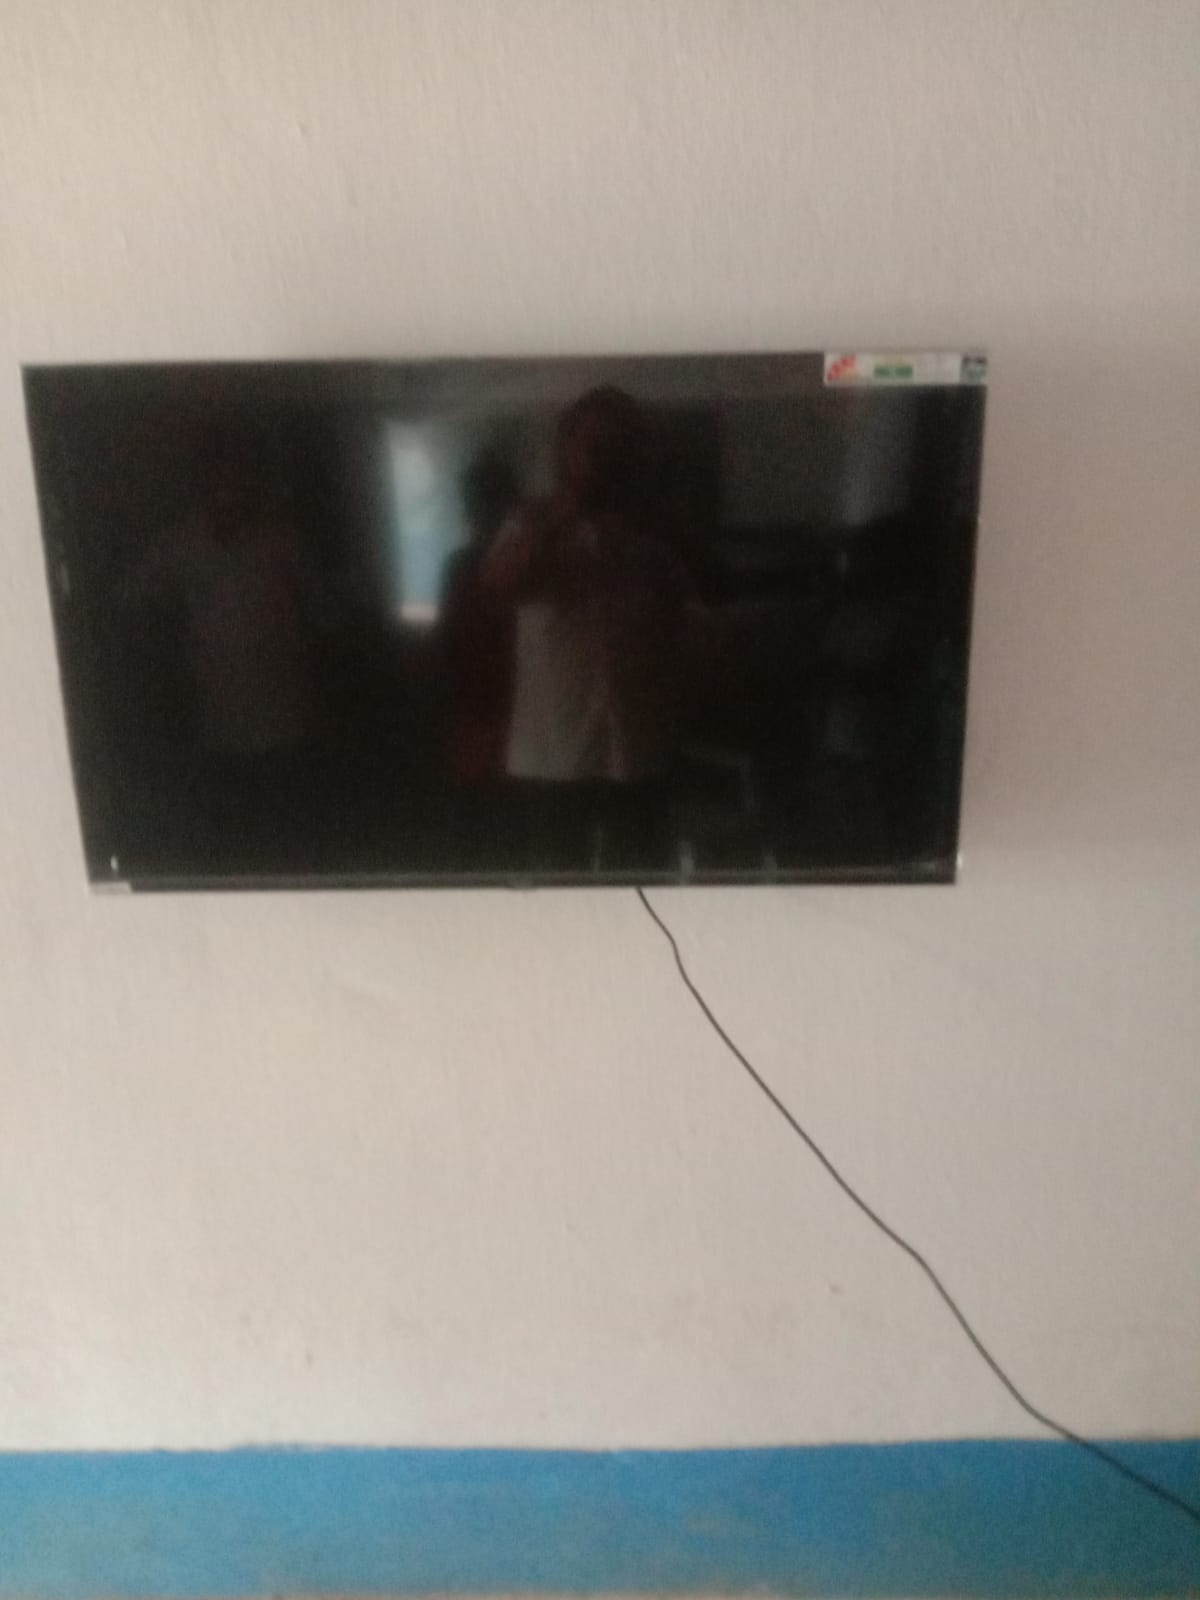 INSTALLATION OF SMART TV AT BHADUBALA VIDYAPITH